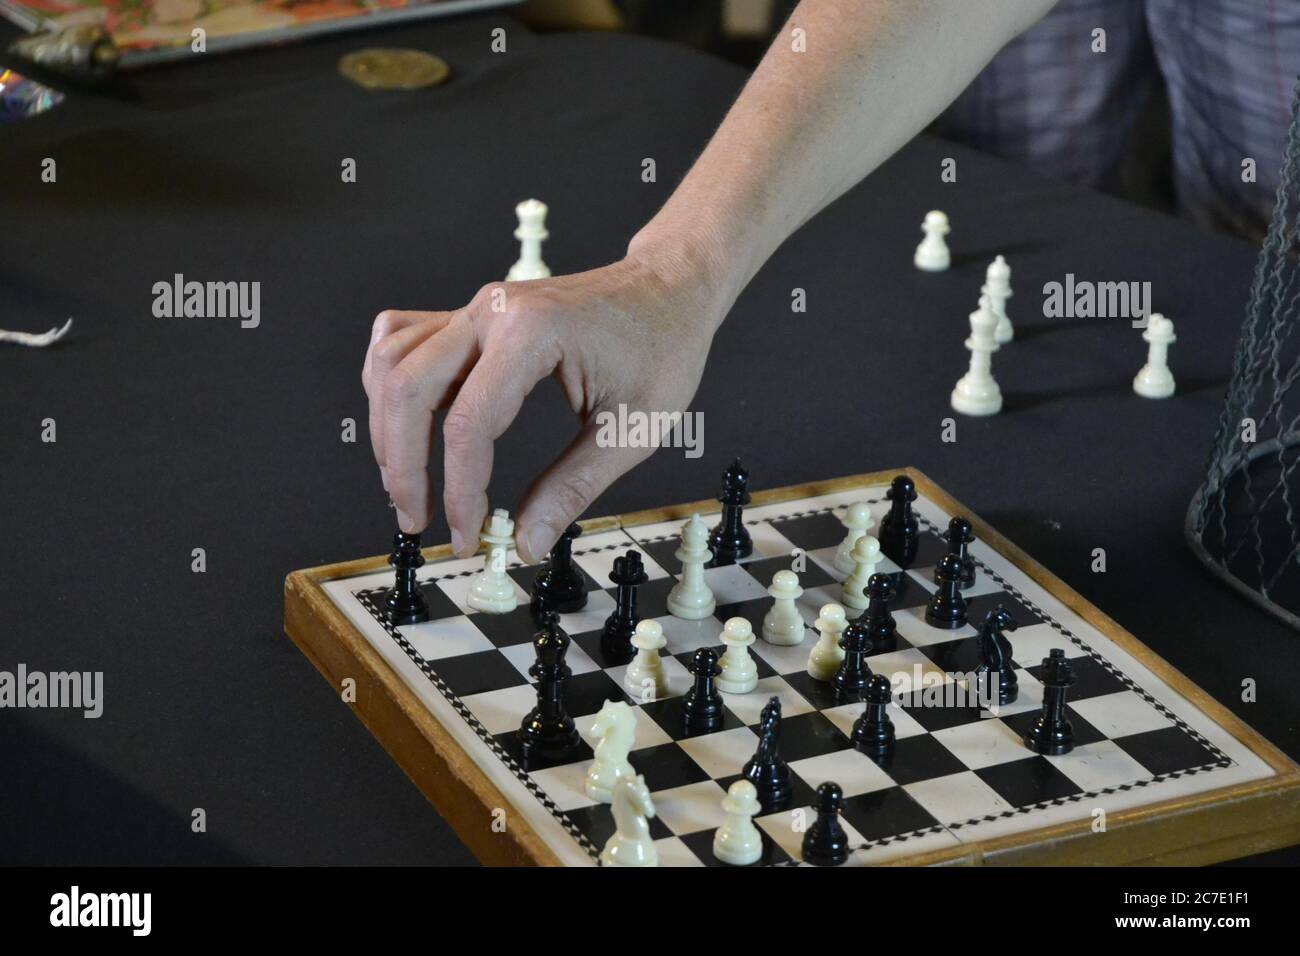 Schachspiel. Hand eines jungen Mannes, der Schachfiguren auf einem Brett mit weißen und schwarzen Figuren auf schwarzem Hintergrund bewegt. Stockfoto